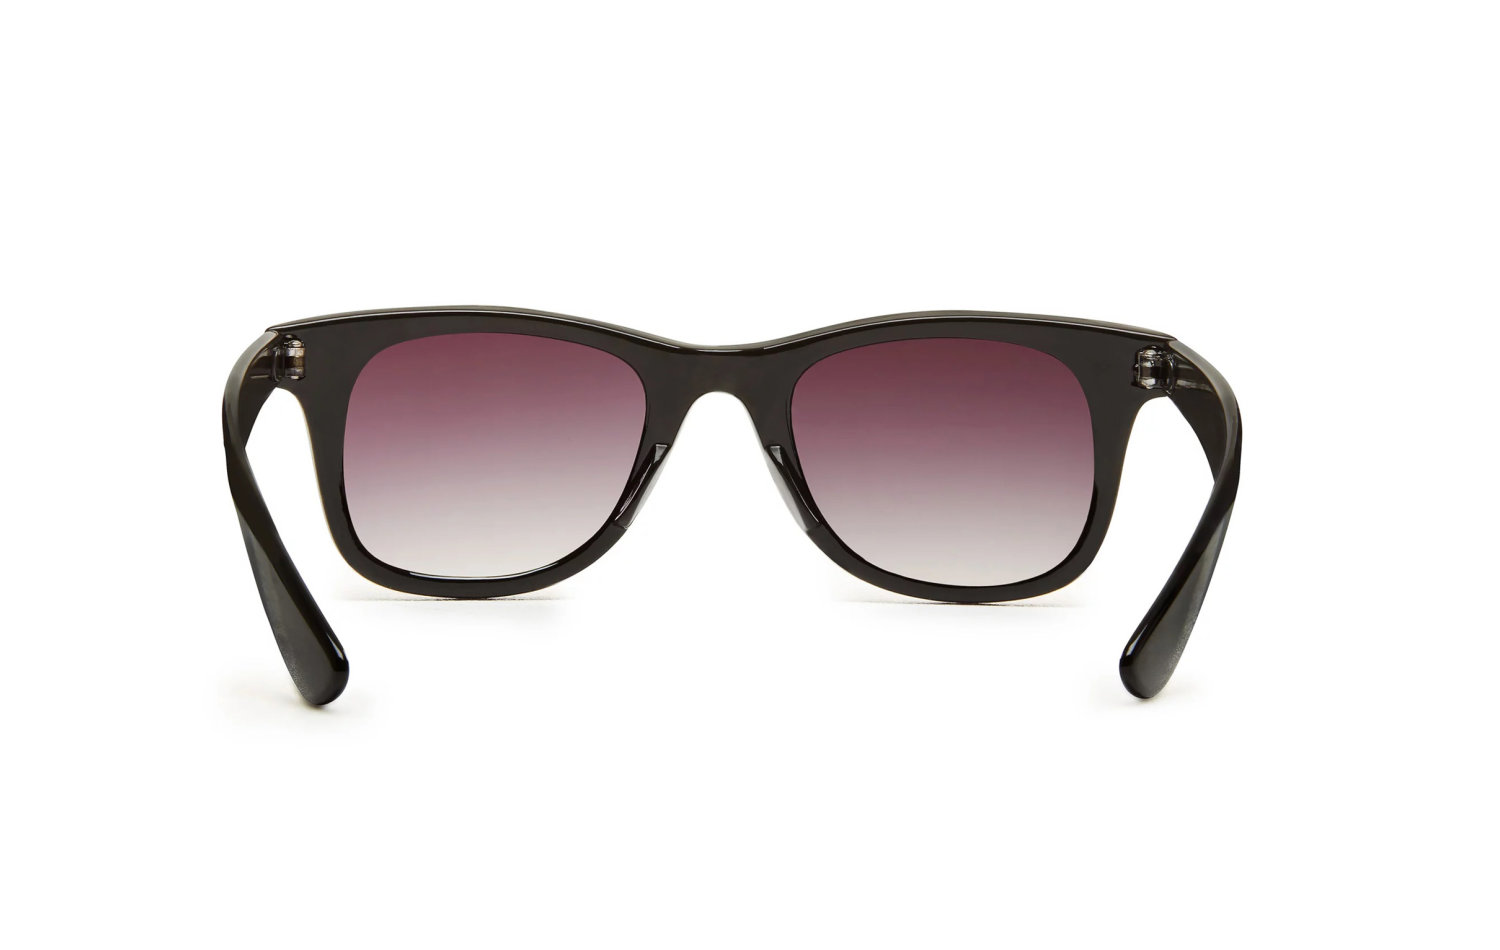 Vans Janelle Hipster Sunglasses (VN000VXLY45)